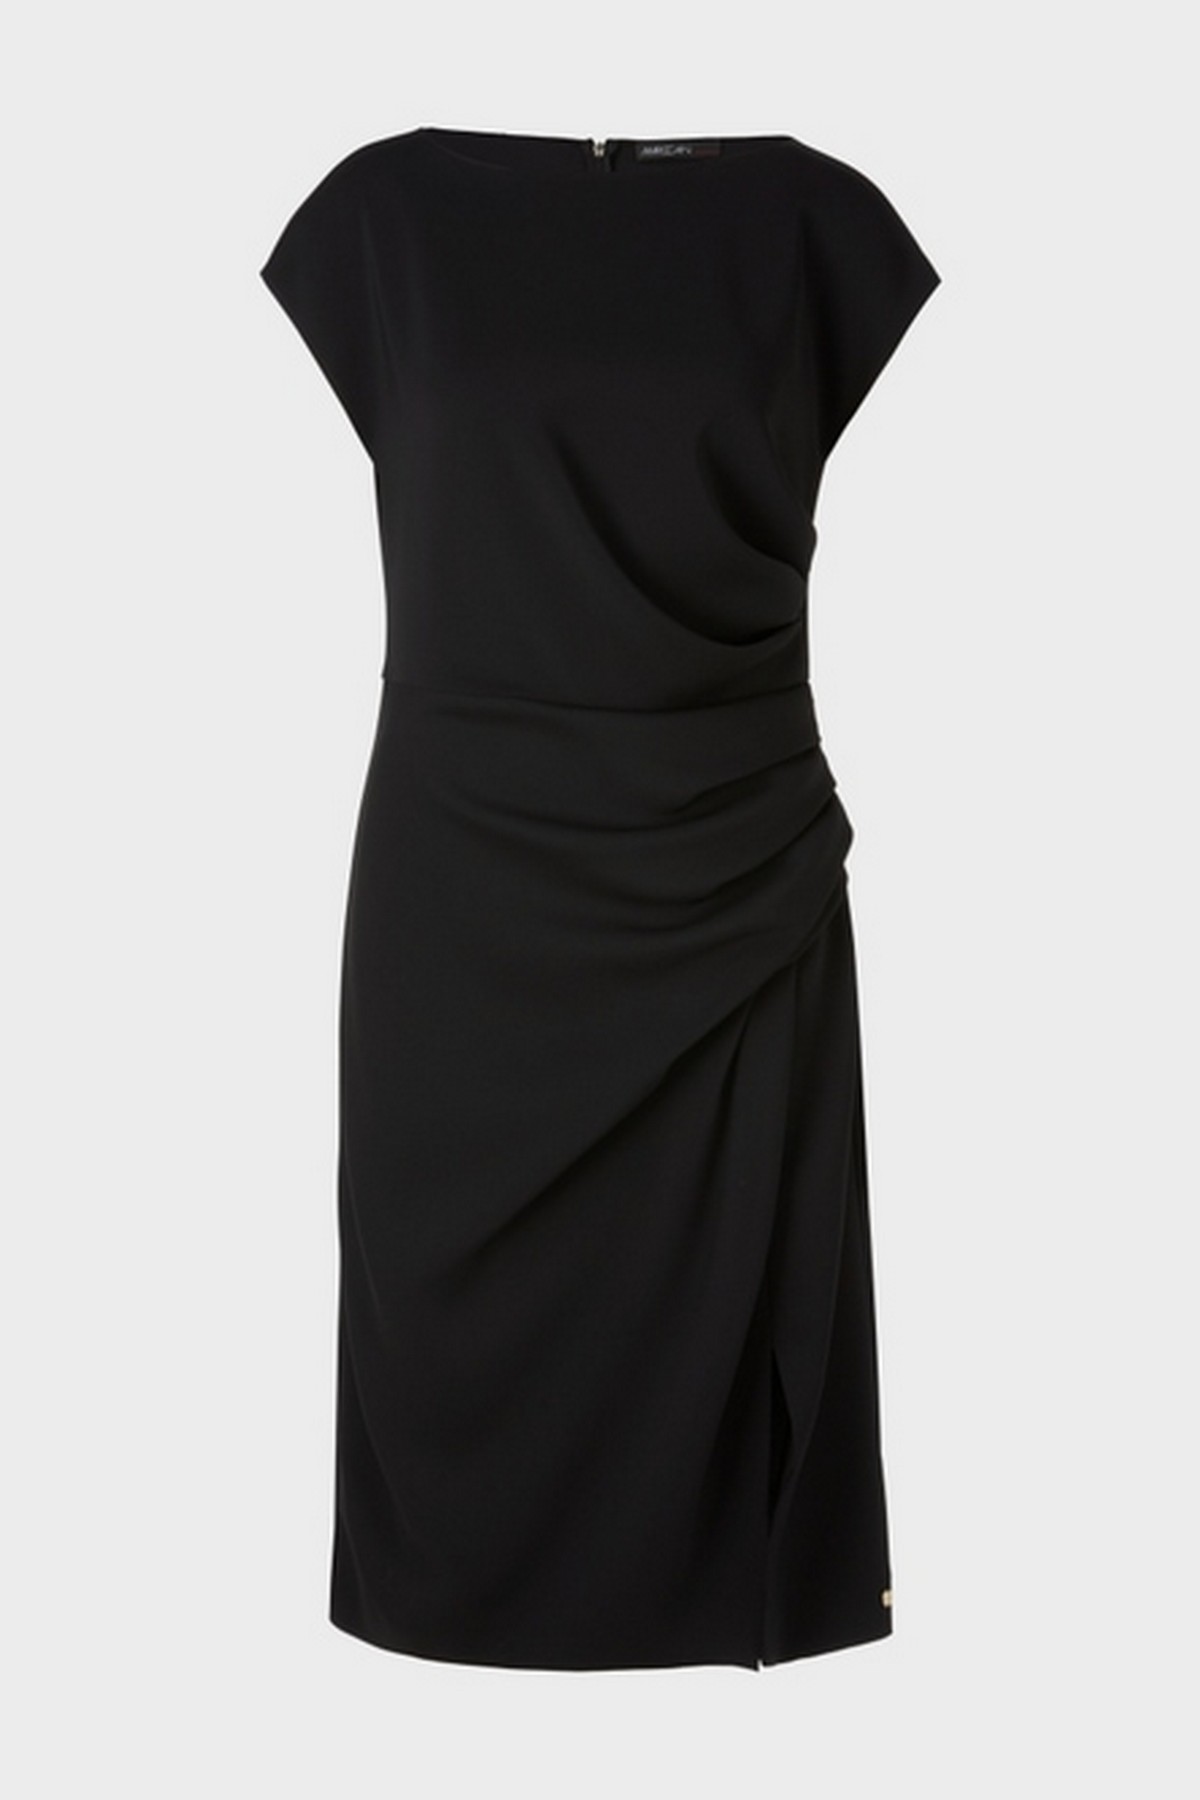 Jurk drapage taille in de kleur zwart van het merk Marc Cain Collections